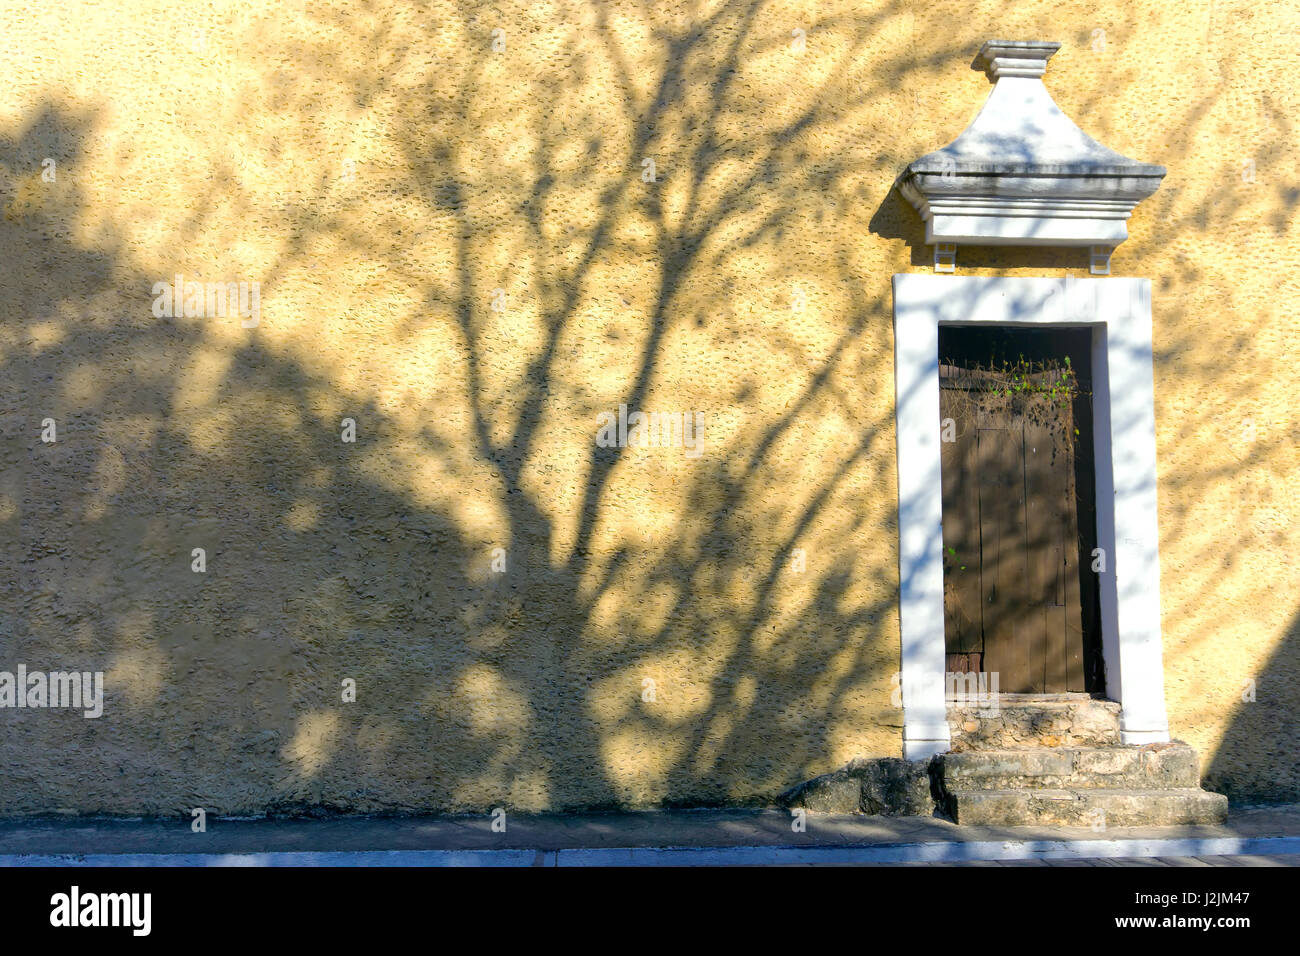 Tree jette une ombre sur un bâtiment colonial à Valladolid, Mexique Banque D'Images